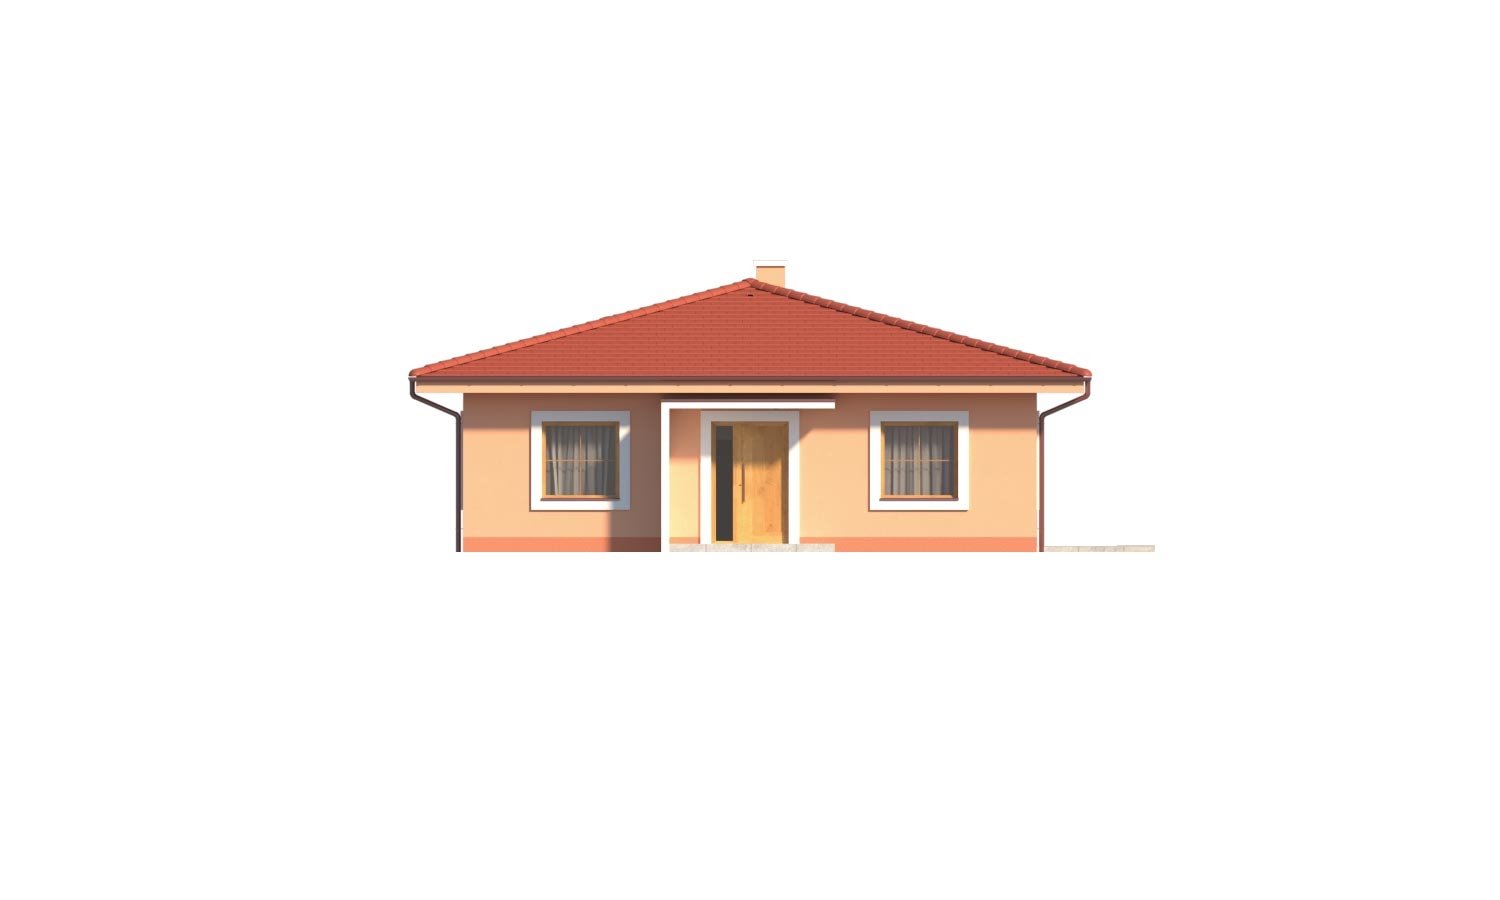 Zrkadlový pohľad 1. - Krásný 5-pokojový zděný bungalov s valbovou střechou a krbem.